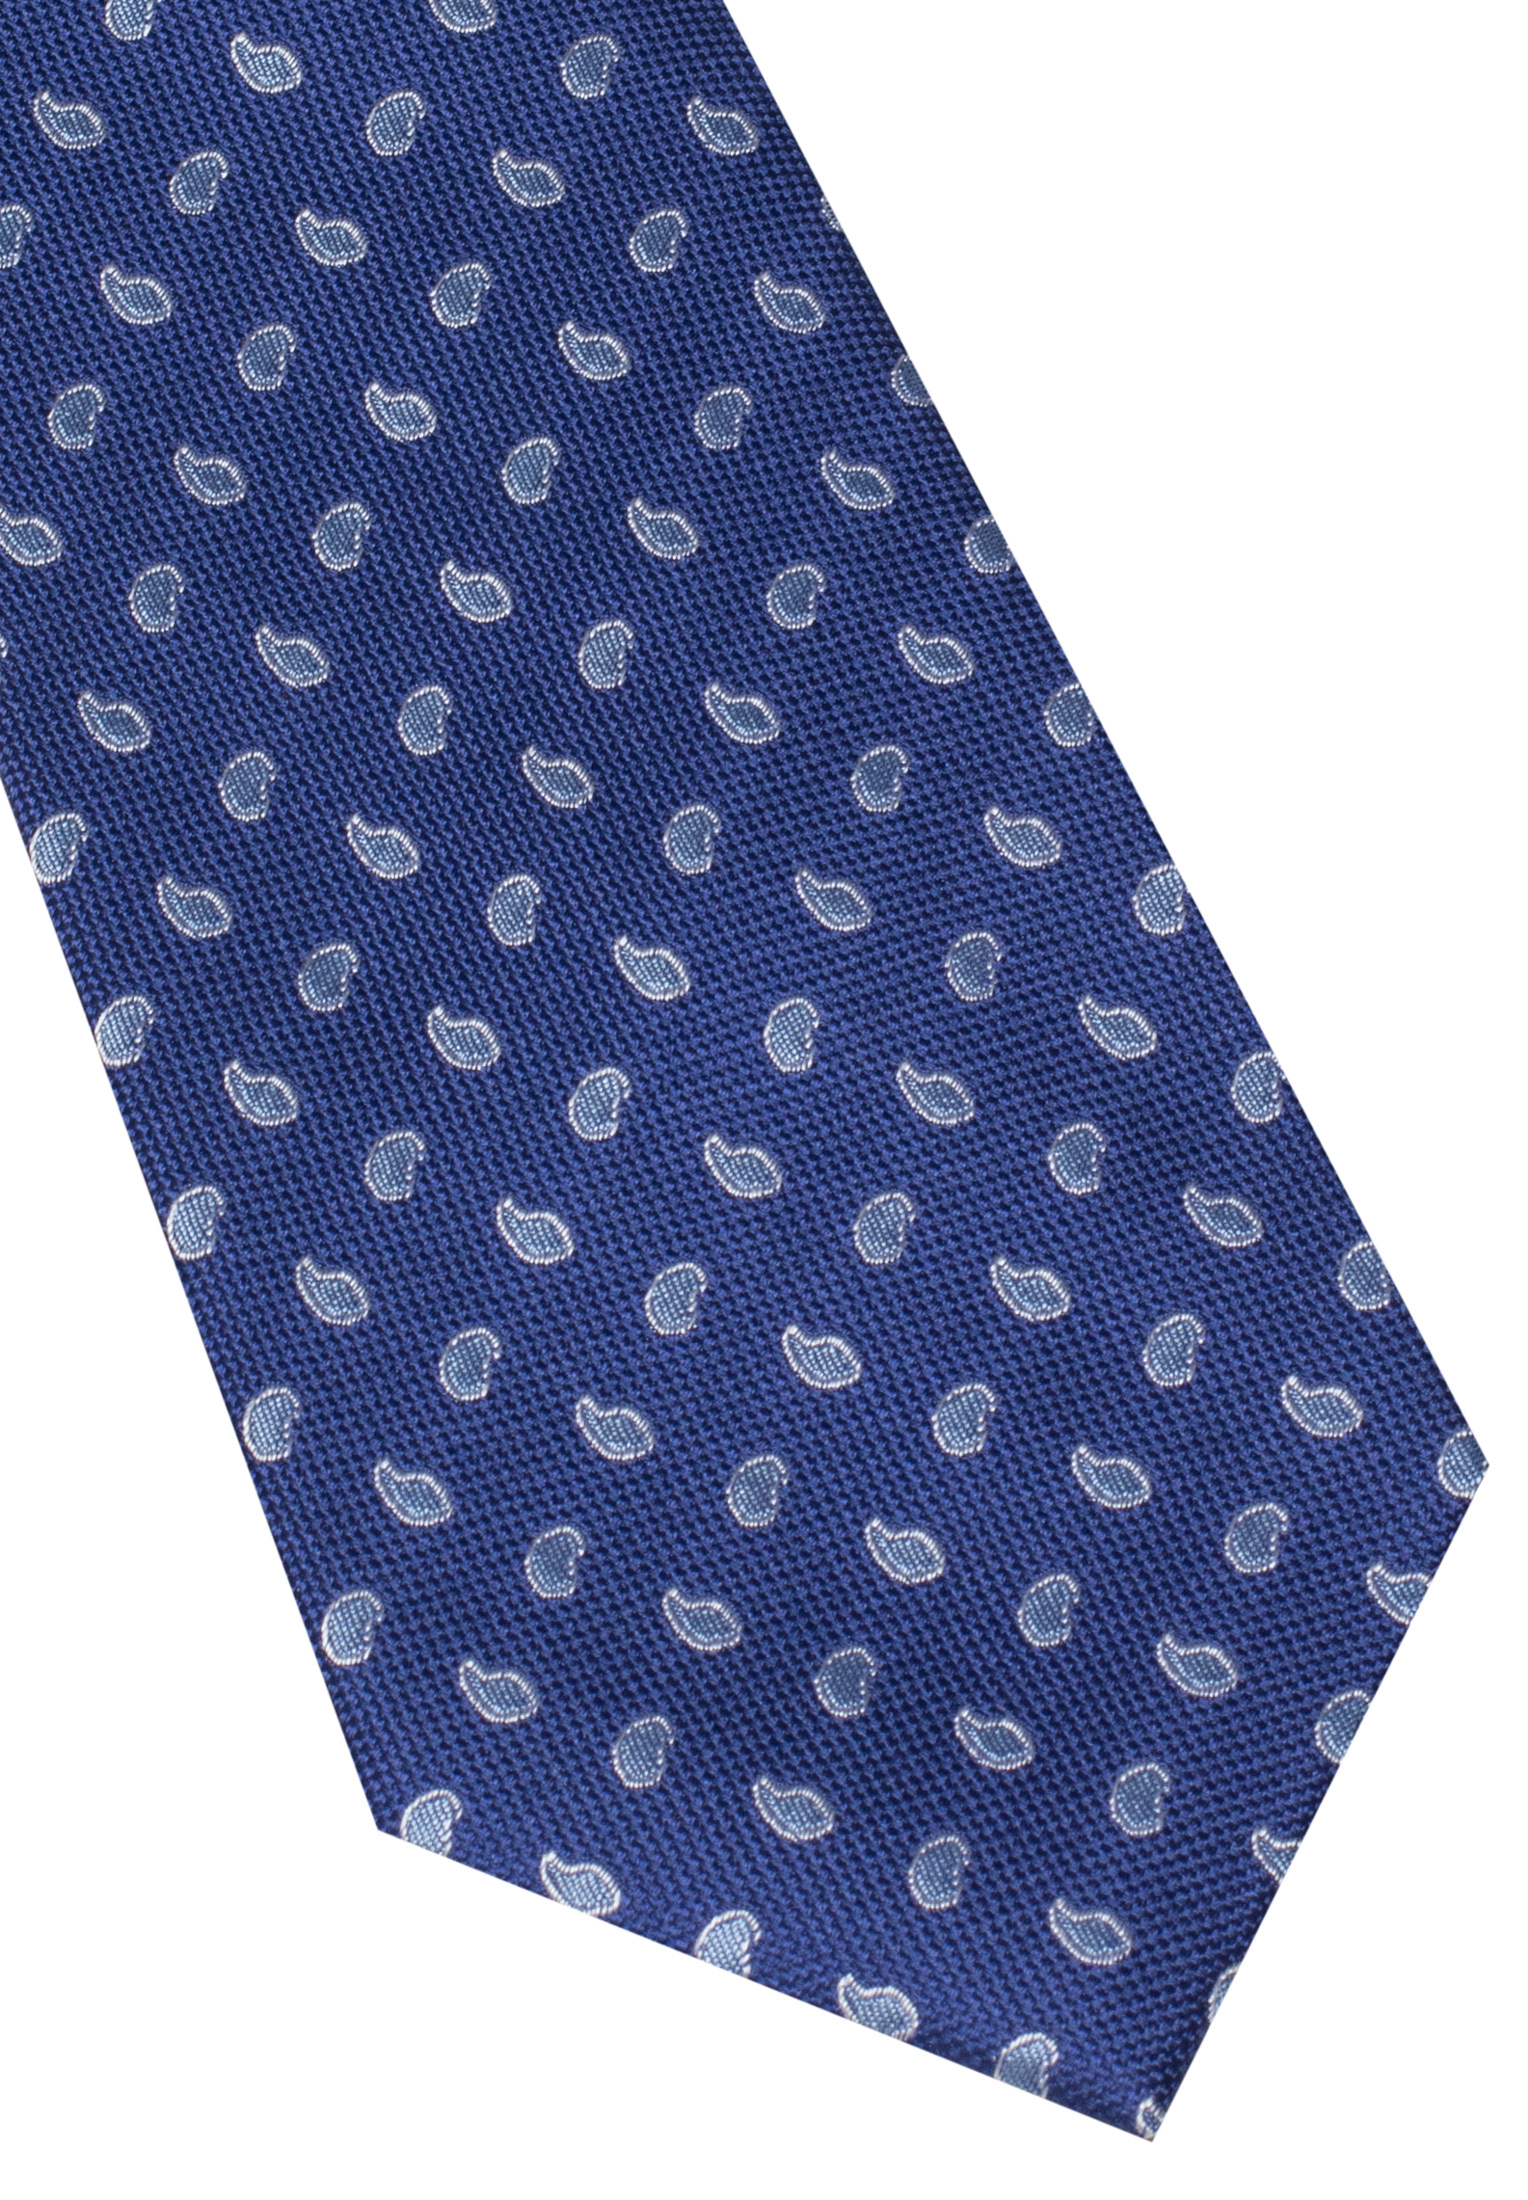 Krawatte in navy/blau | gemustert | | navy/blau 1AC00541-81-83-142 142